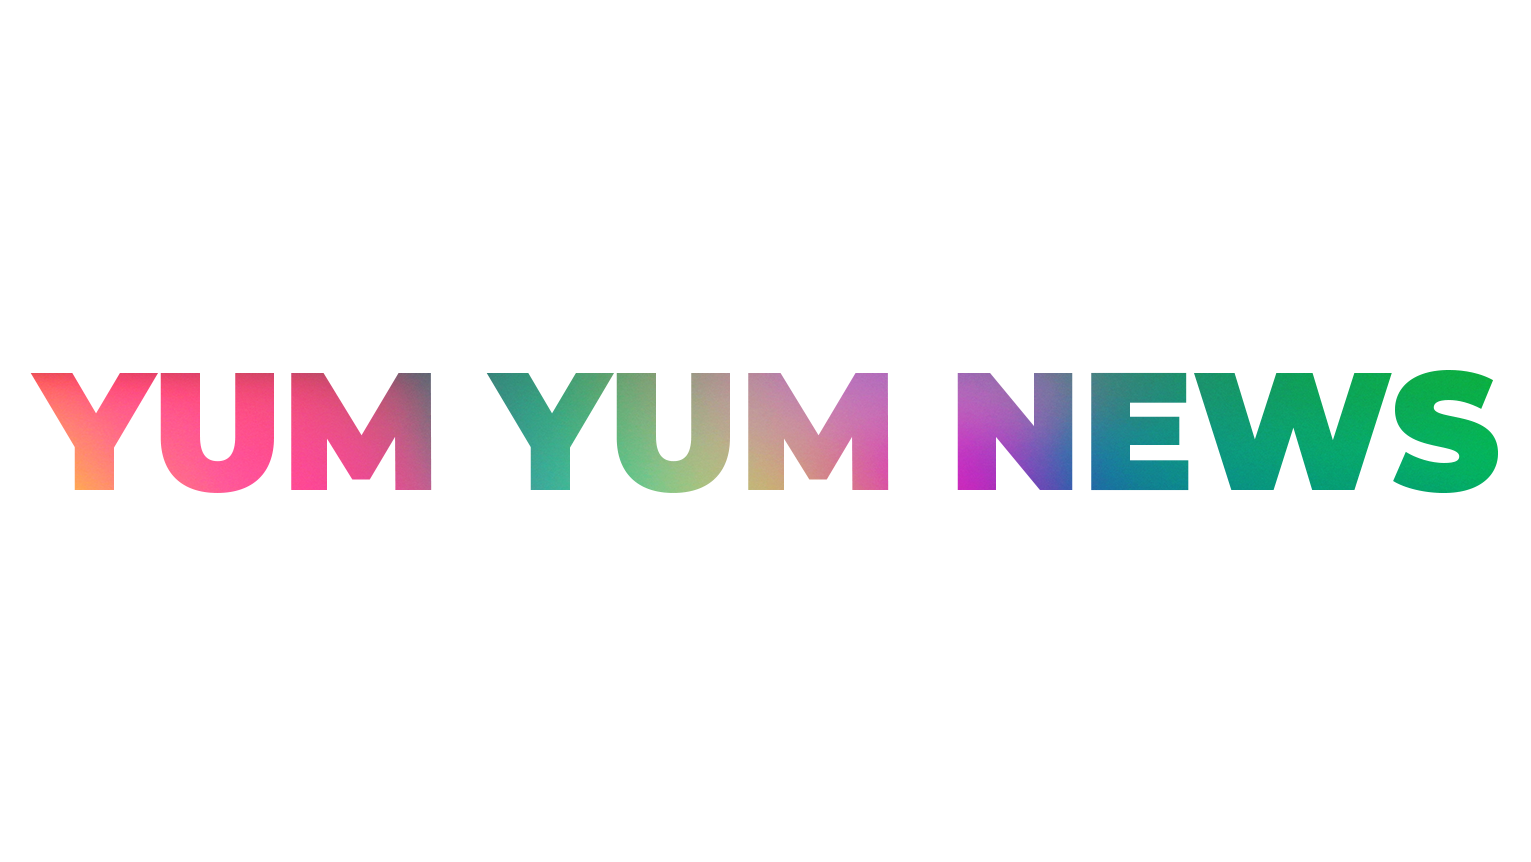 We Are Yum Yum News – Yum yum News